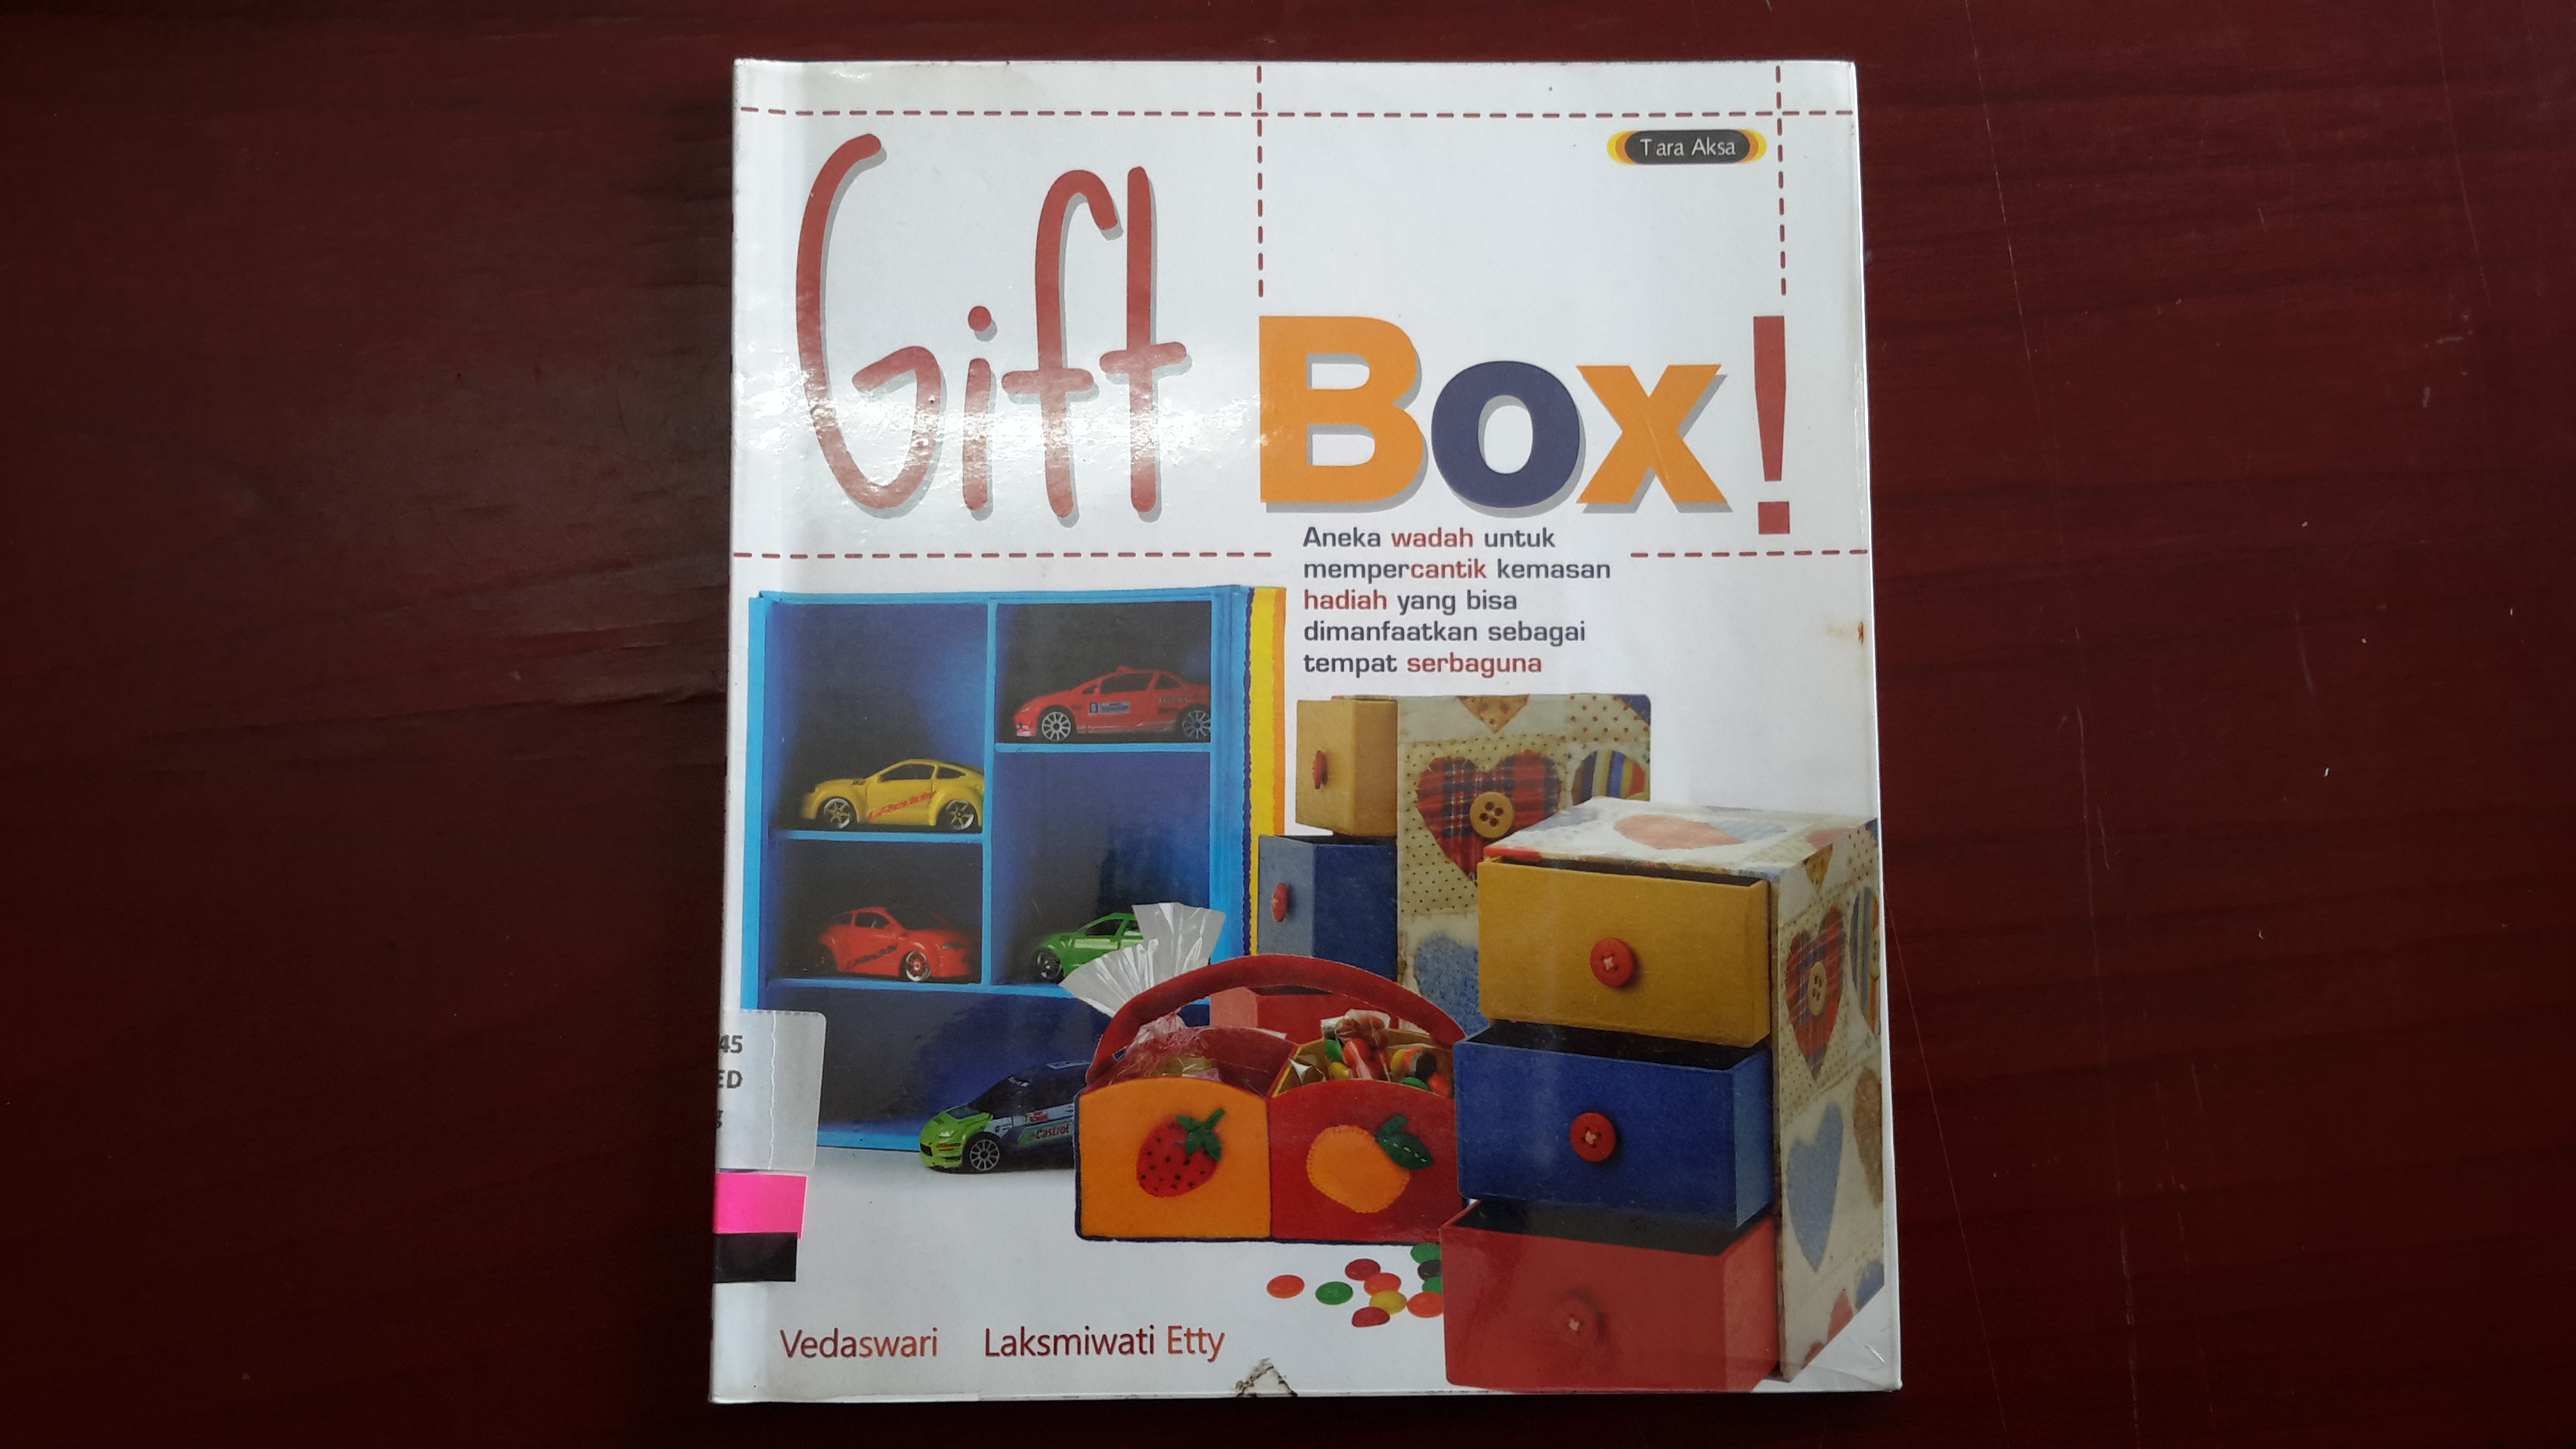 Gift Box! :  aneka wadah untuk mempercantk kemasan hadiah yang bisa dimanfaatkan sebagai tempat serbaguna